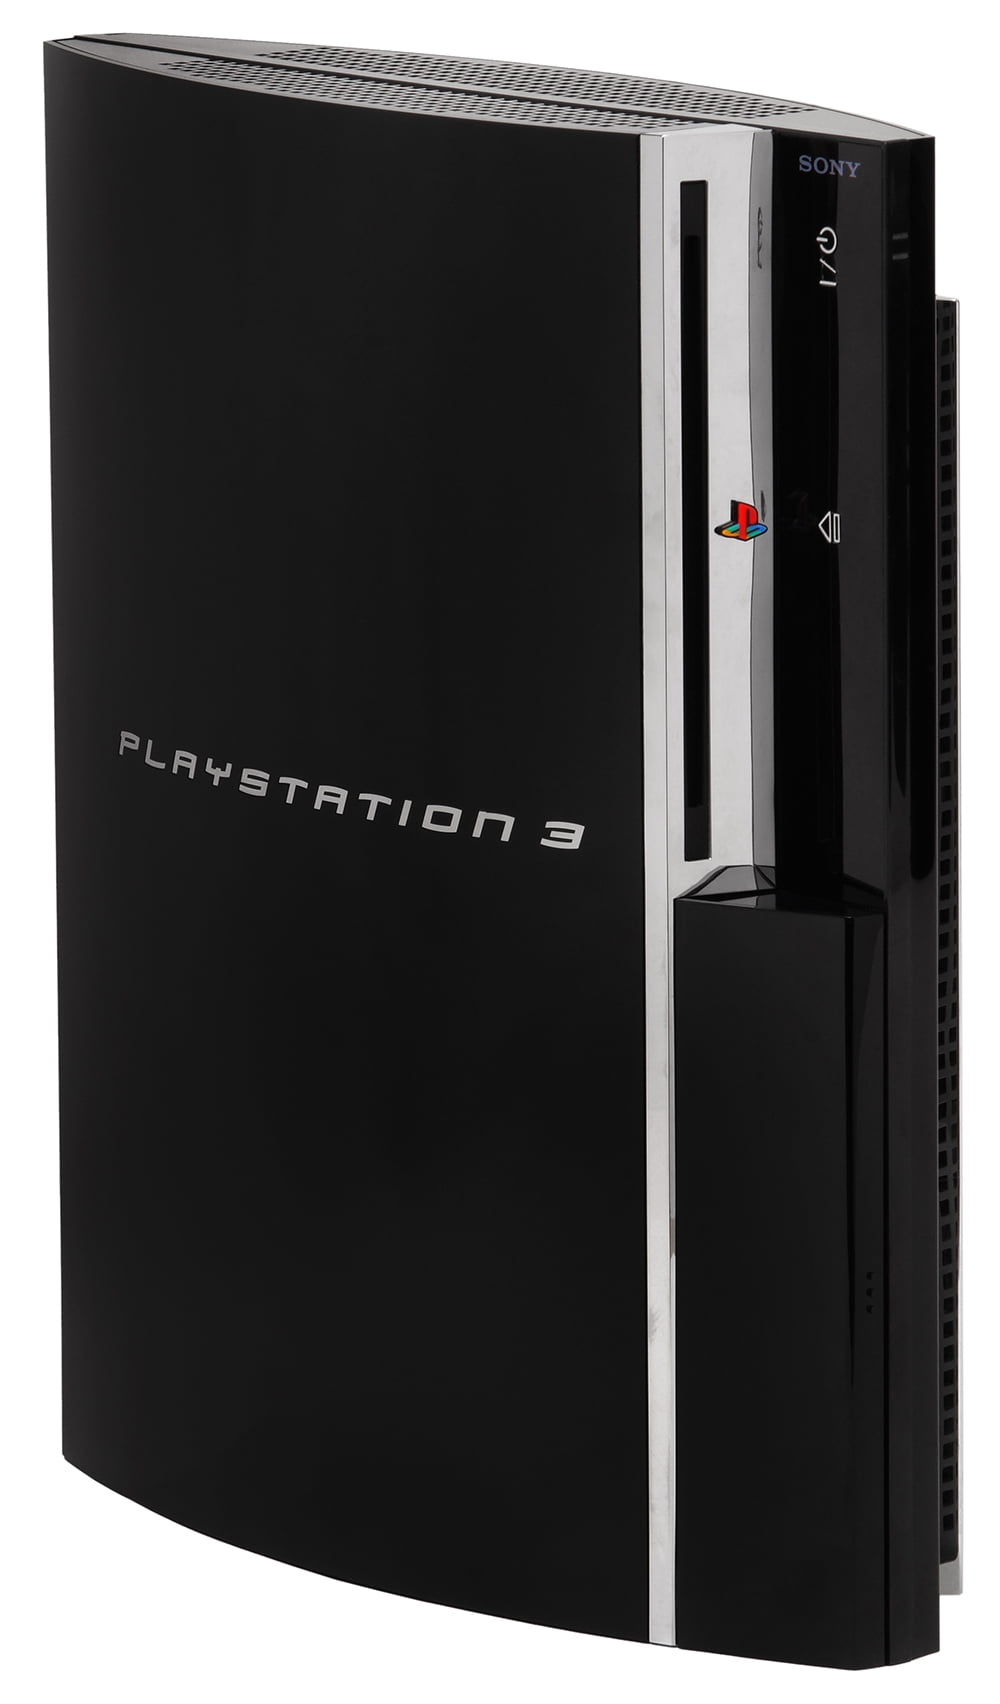 Restored PlayStation 3 80GB System Systems CECHL01 (Refurbished) - Walmart.com